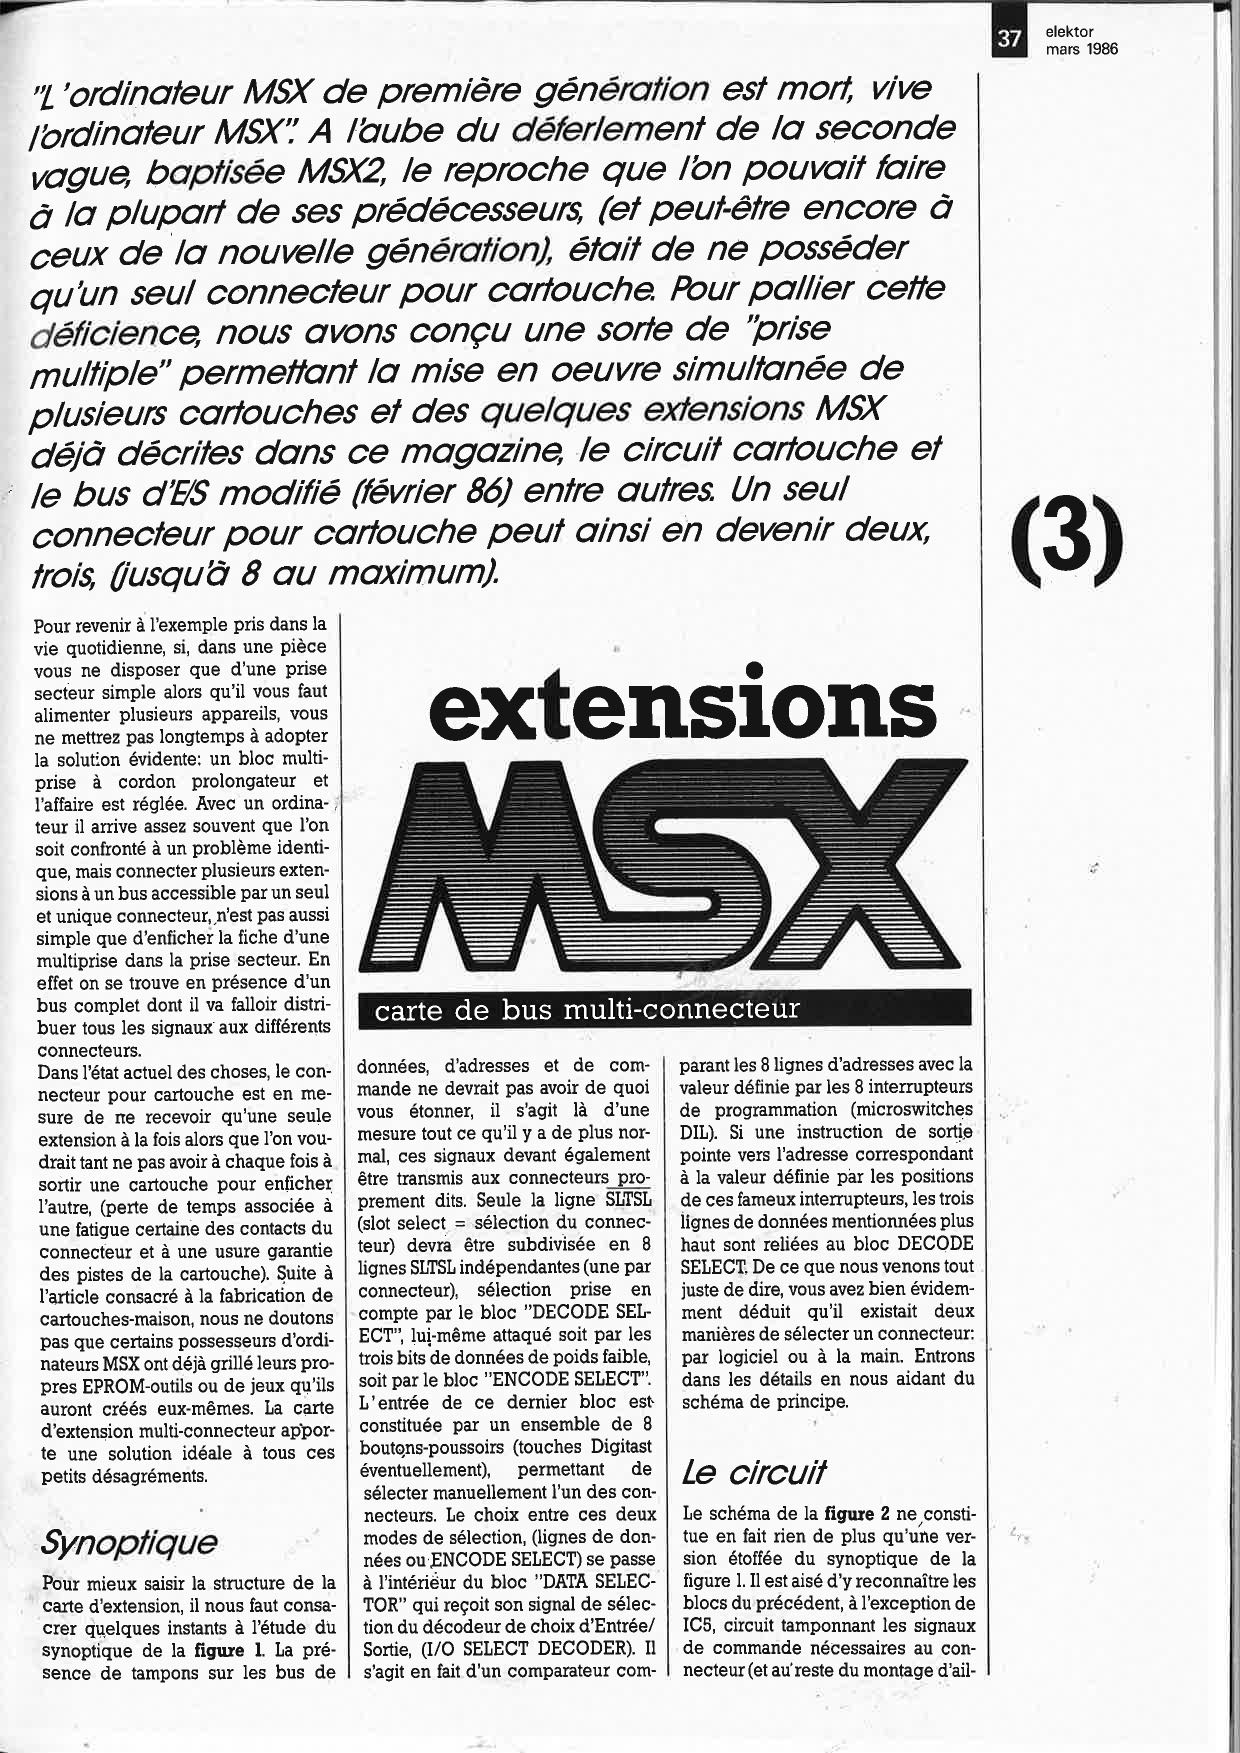 Extensions MSX: carte de bus multi-connecteur